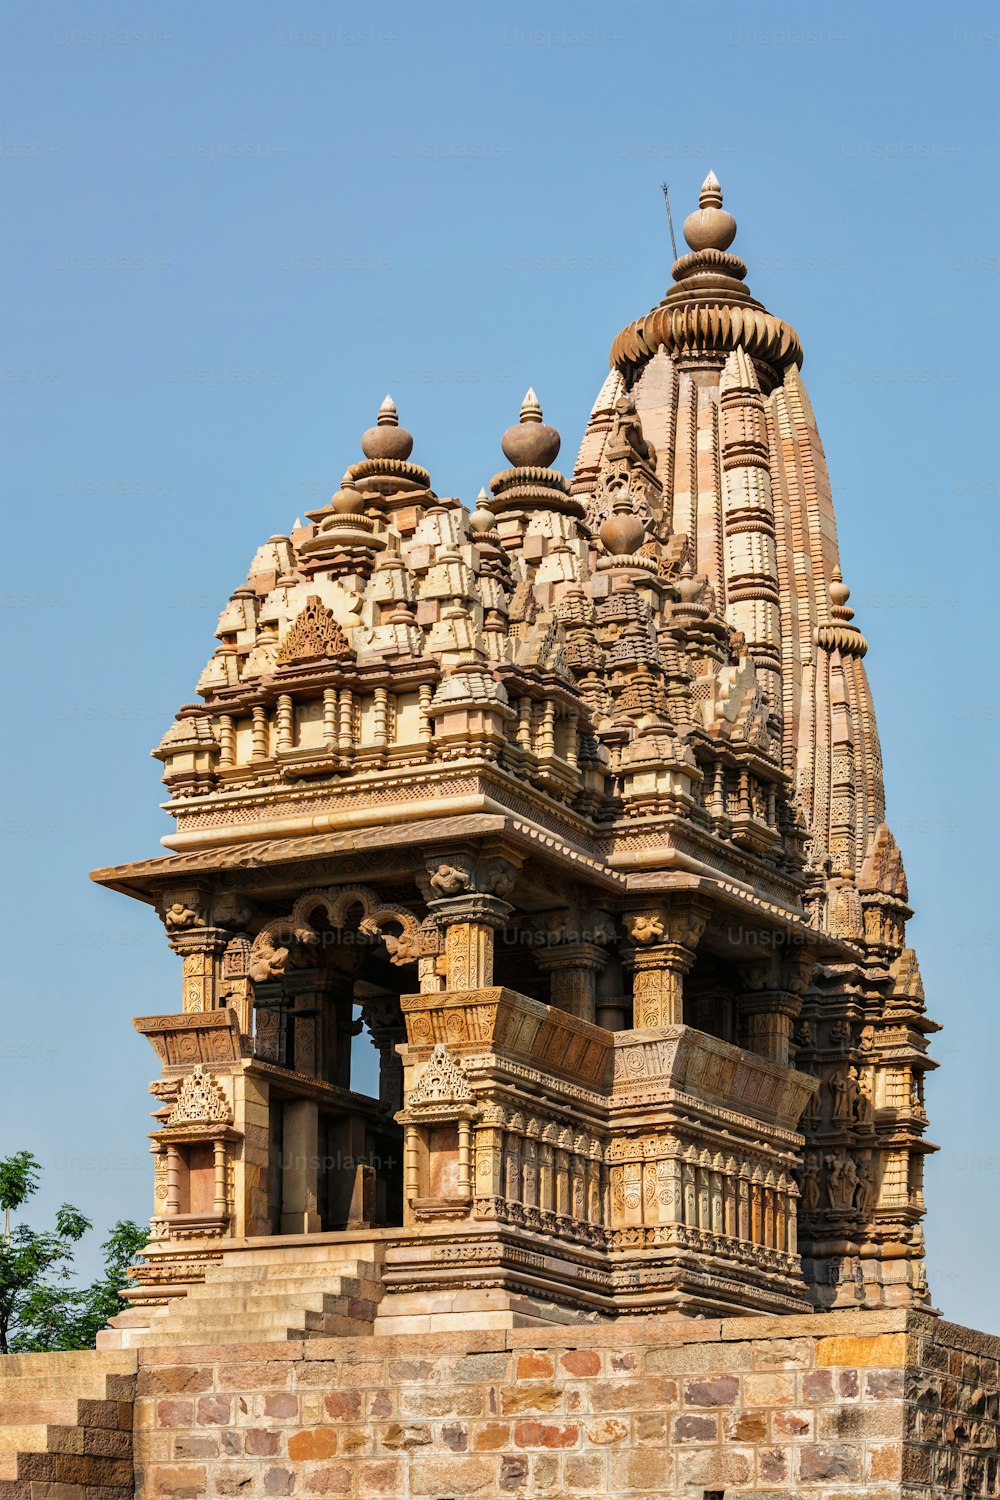 Javari Tempel - eine der berühmten Touristenattraktionen von Khajuraho mit Skulpturen. Indien, Khajuraho, Madhya Pradesh, Indien, Khajuraho, Madhya Pradesh, Indien